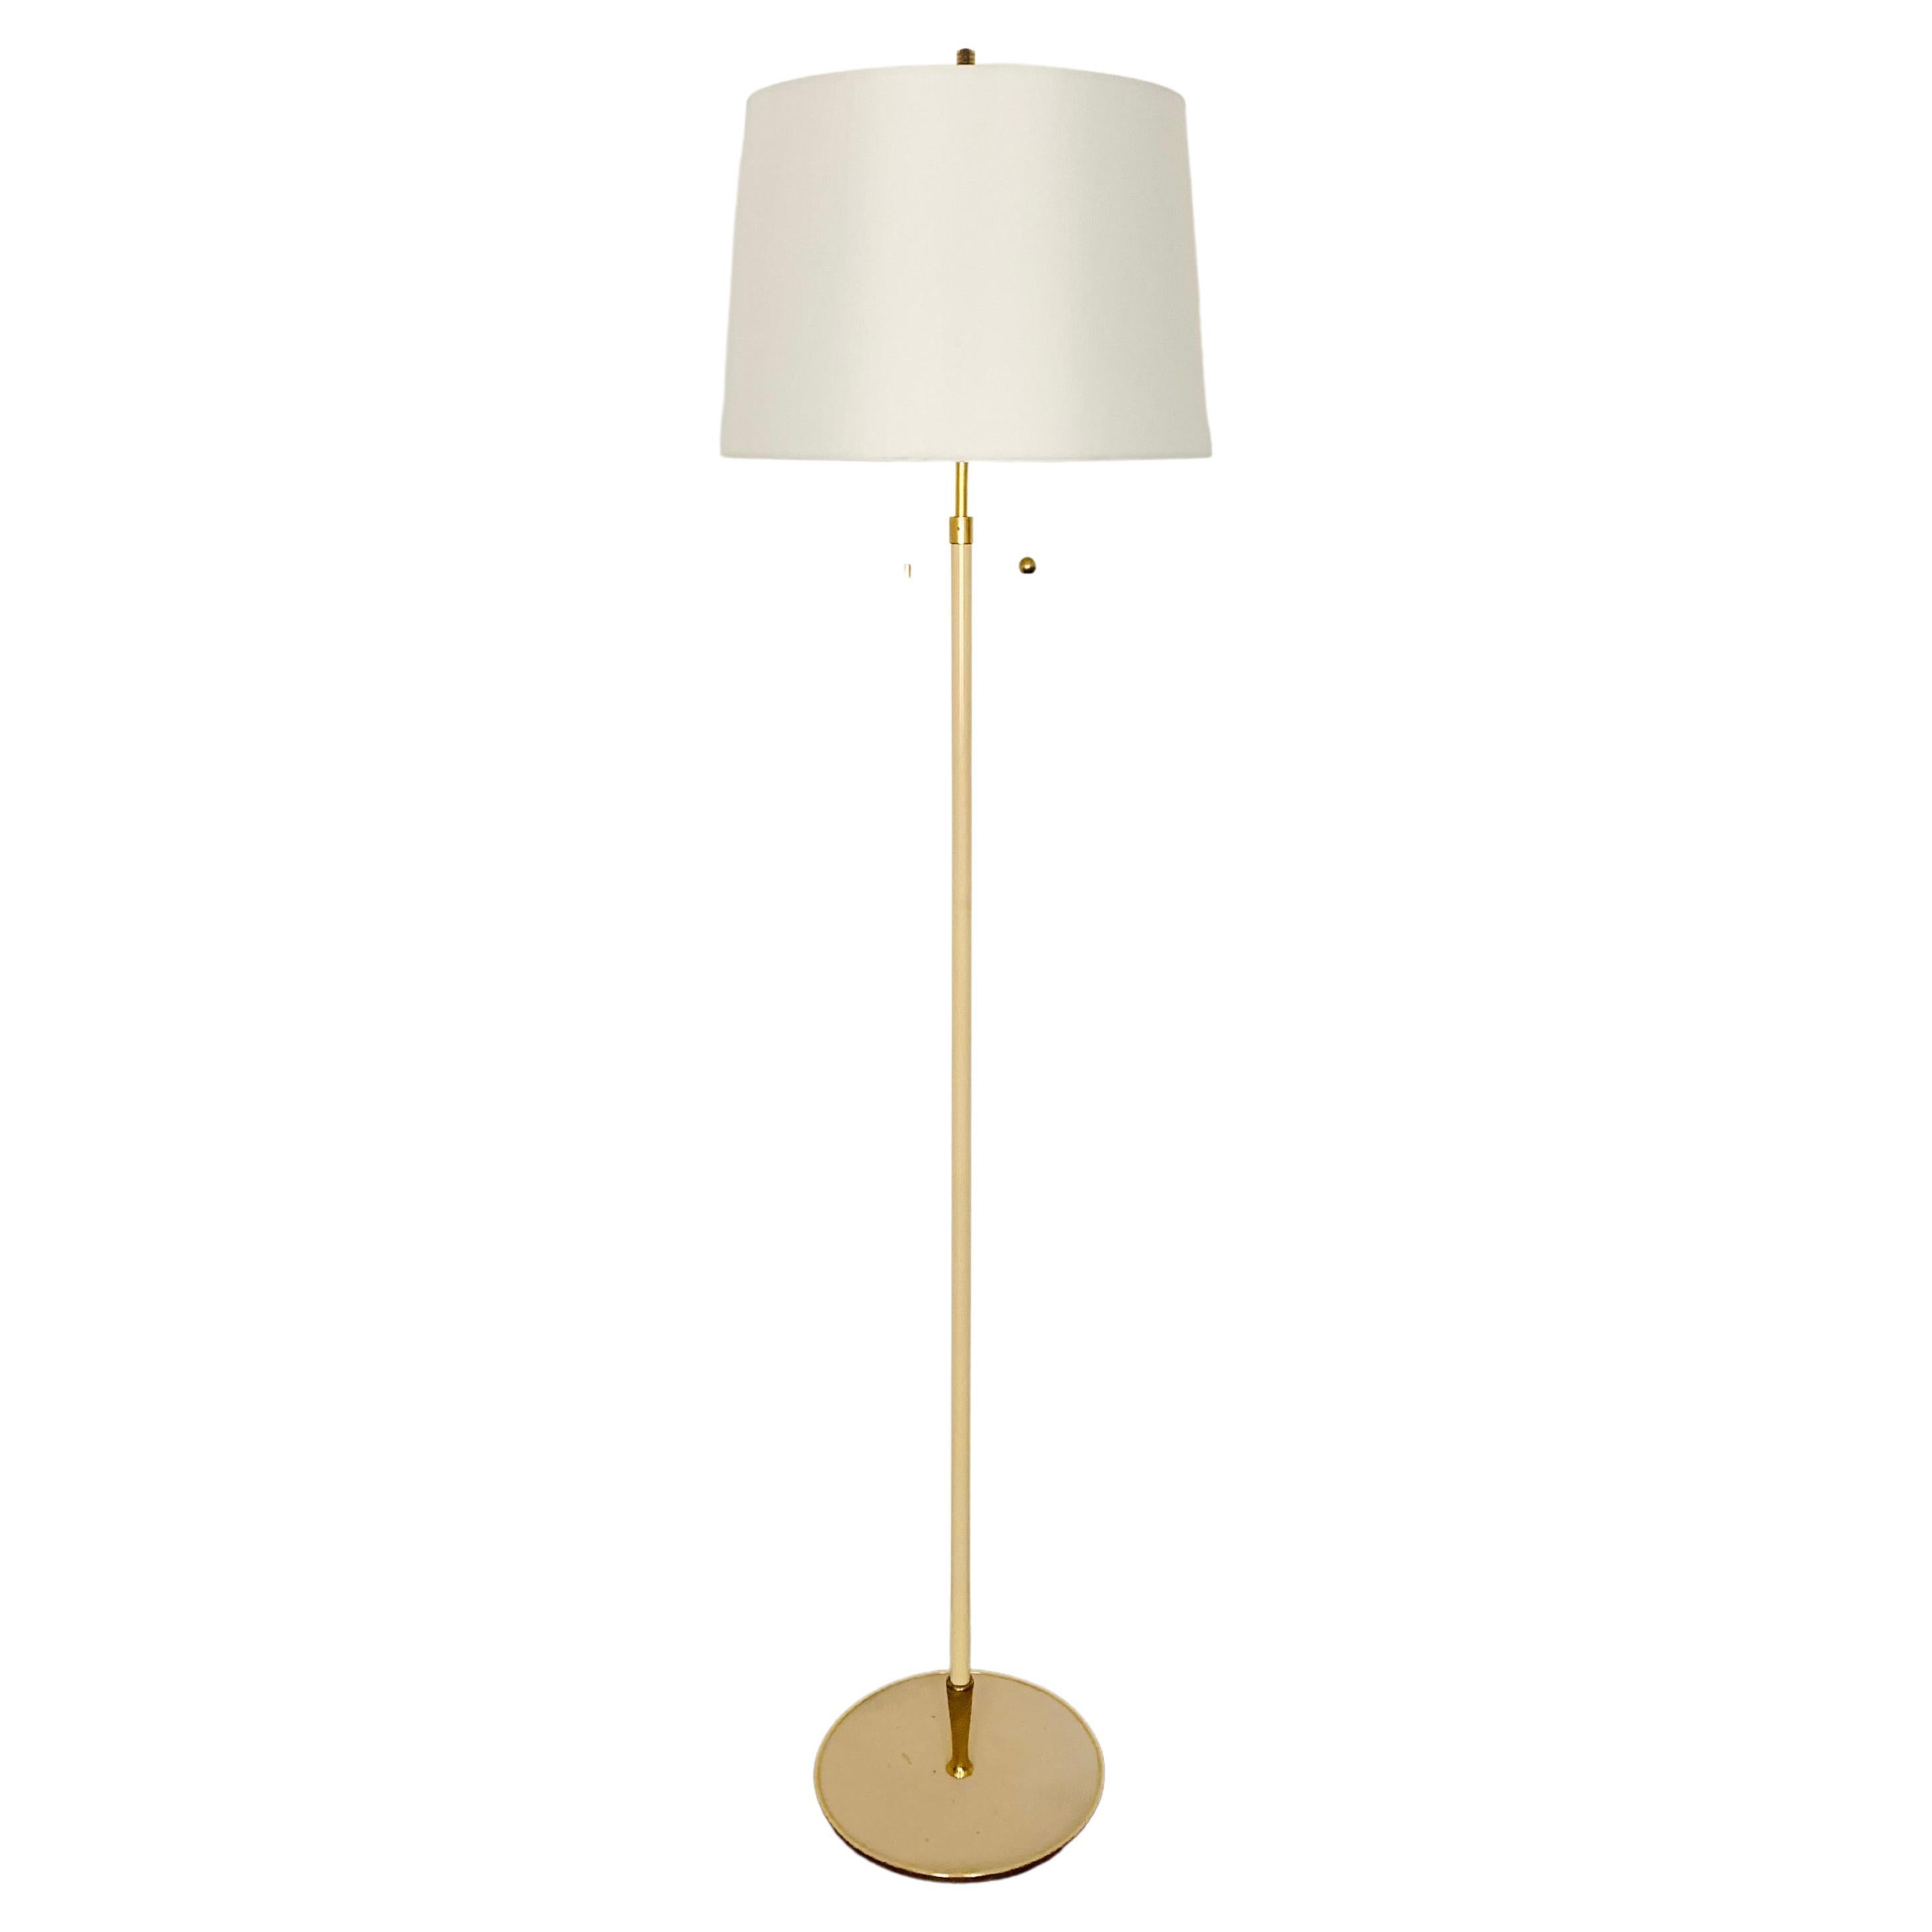 Brass Floor Lamp by Vereinigte Werkstätten For Sale